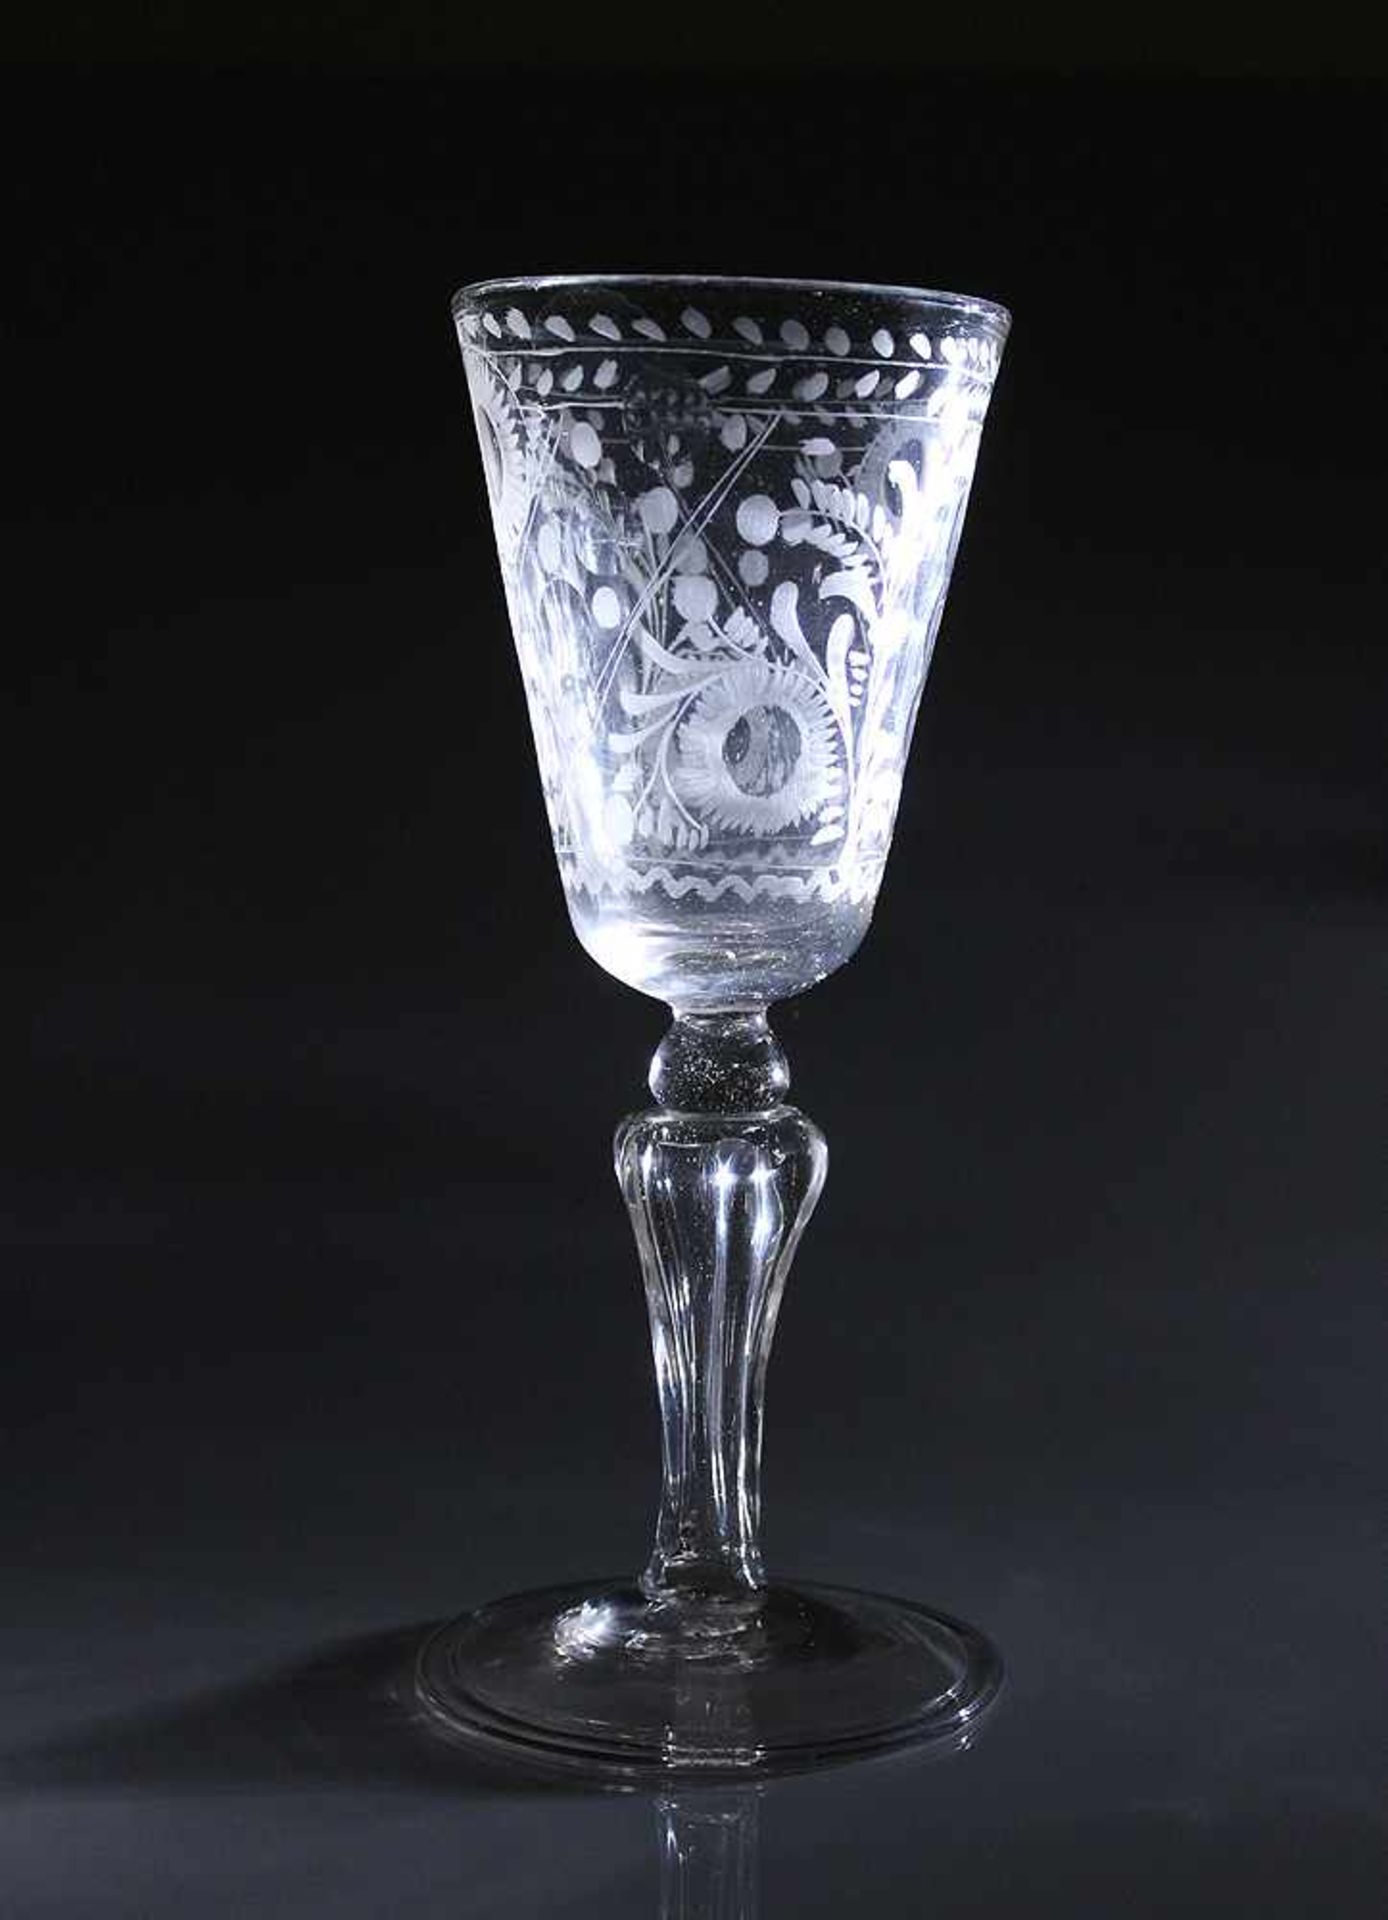 Kelchglas.18./19. Jh. Farbloses Glas, Standscheibe mit umgeschlagenem Rand. Floraler Schliffdekor.